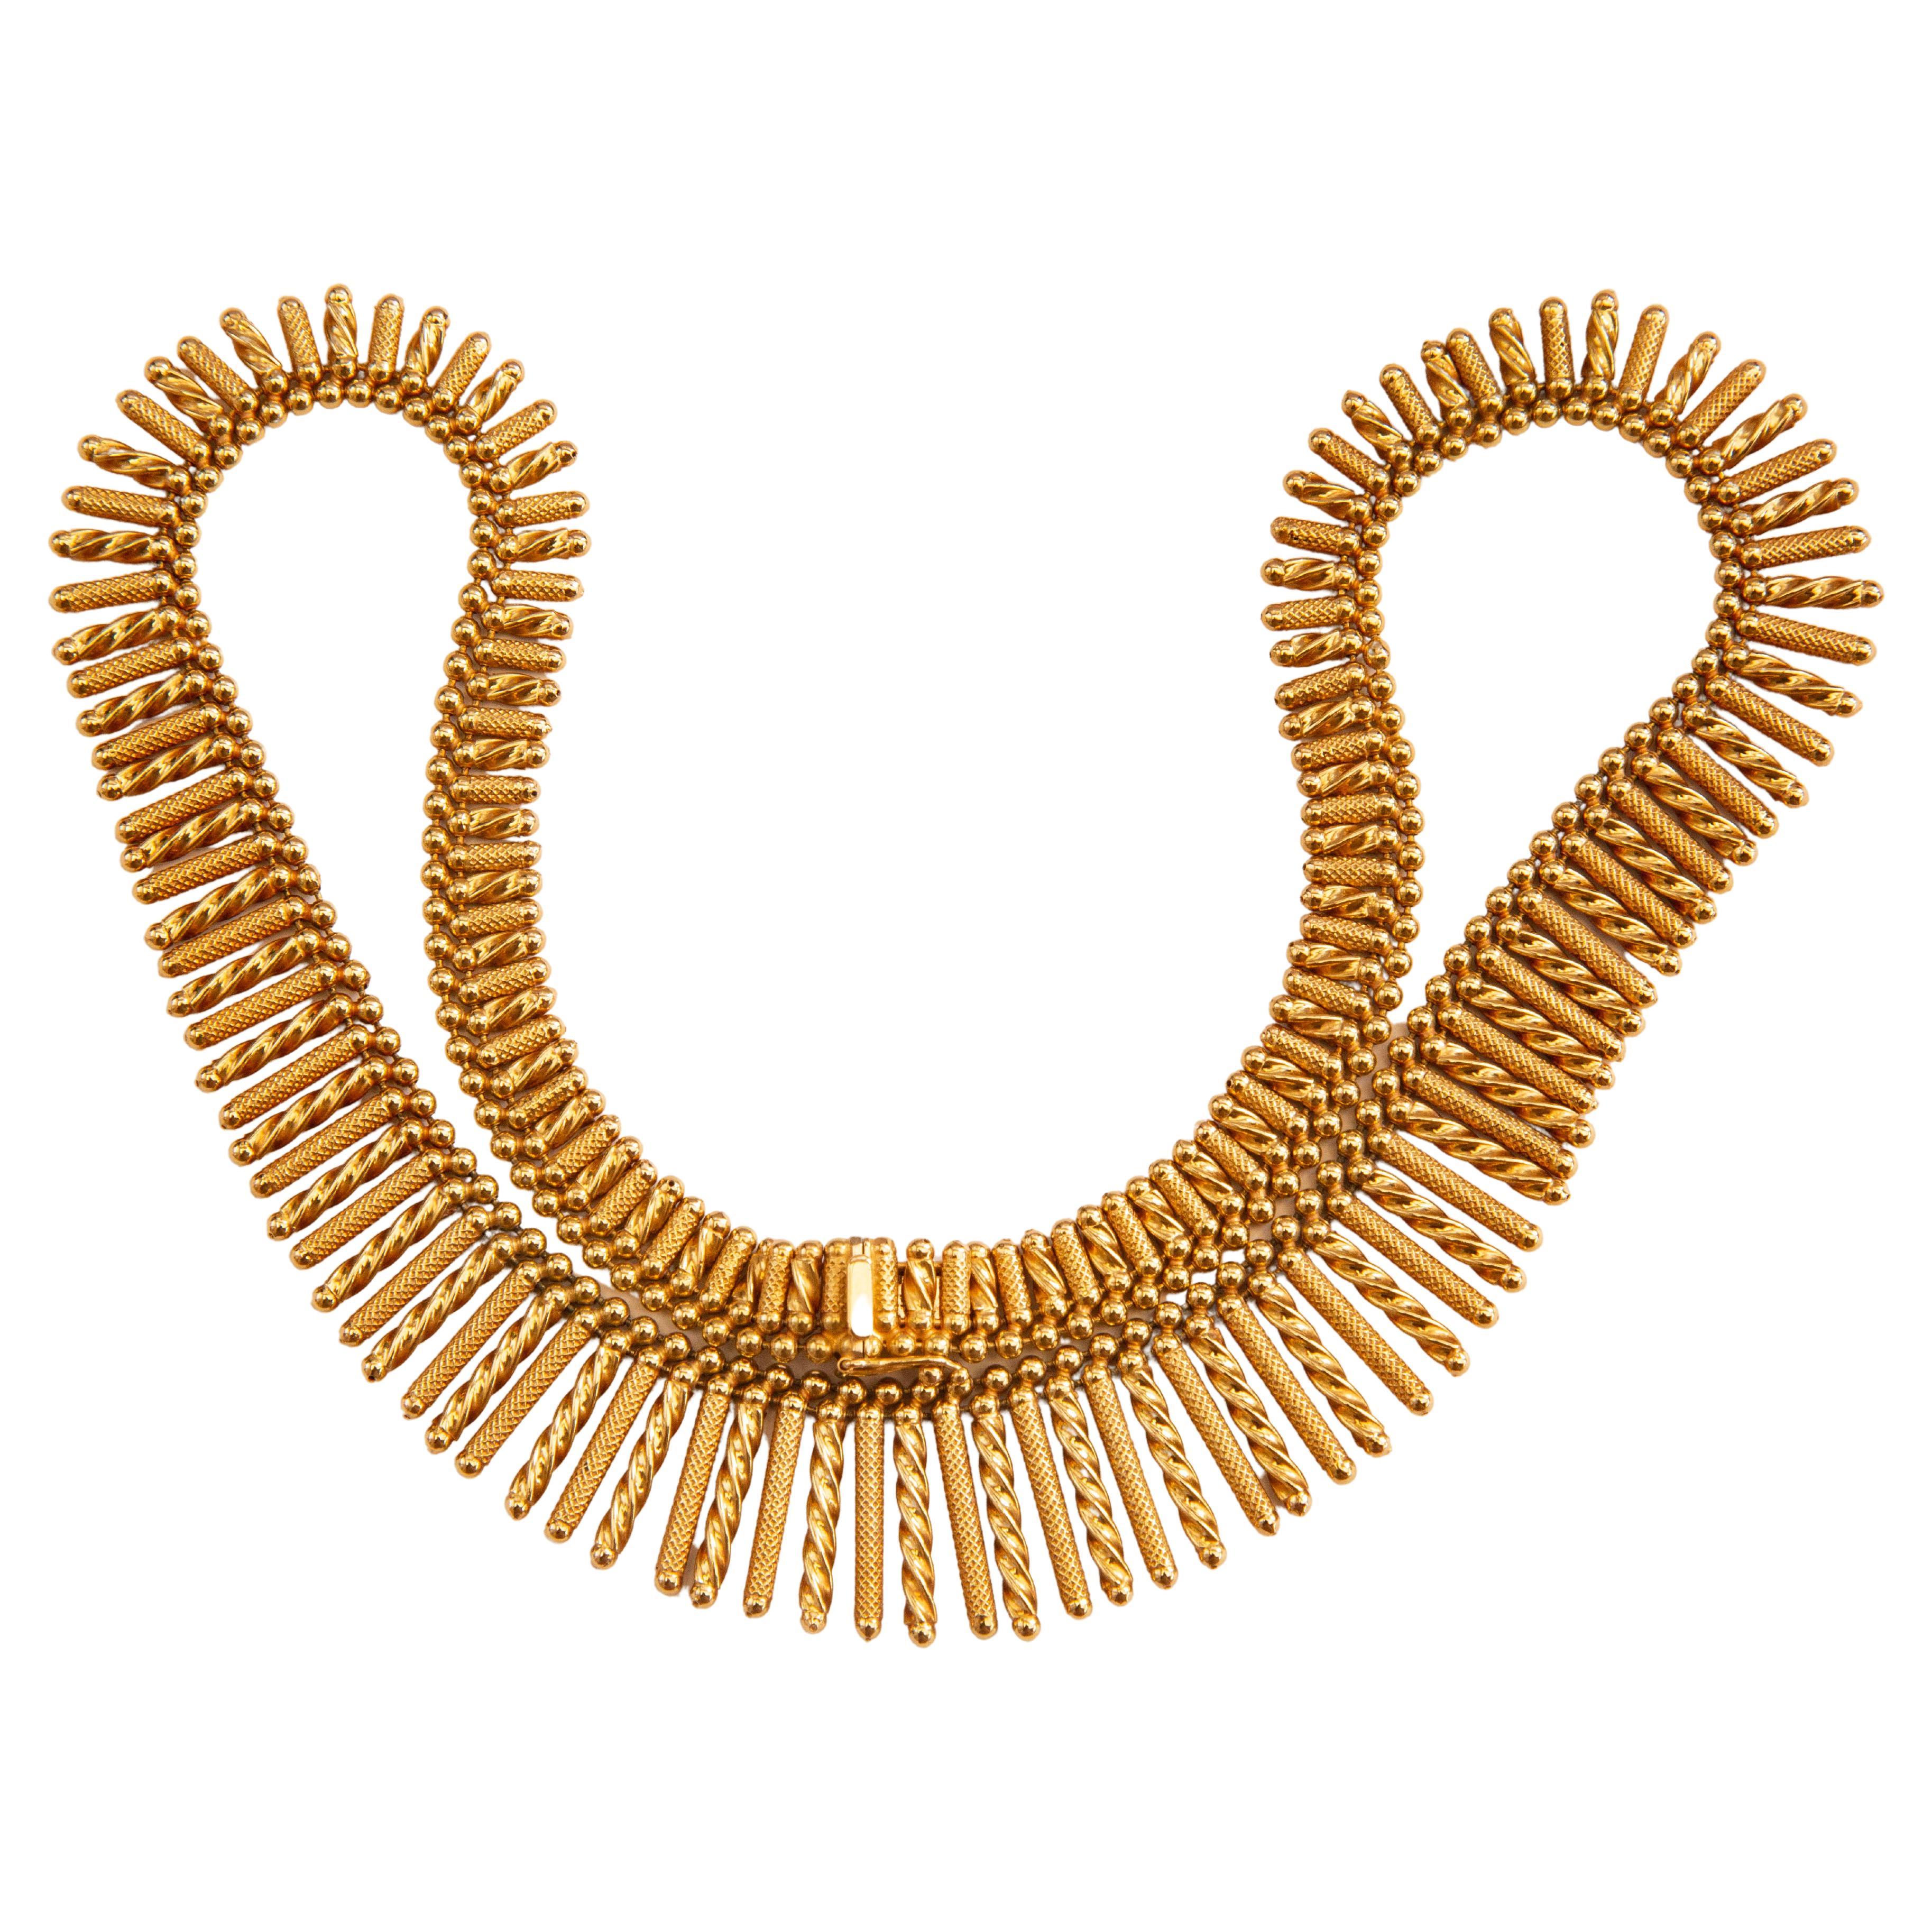 Gold Fringe Necklace - 81 For Sale on 1stDibs